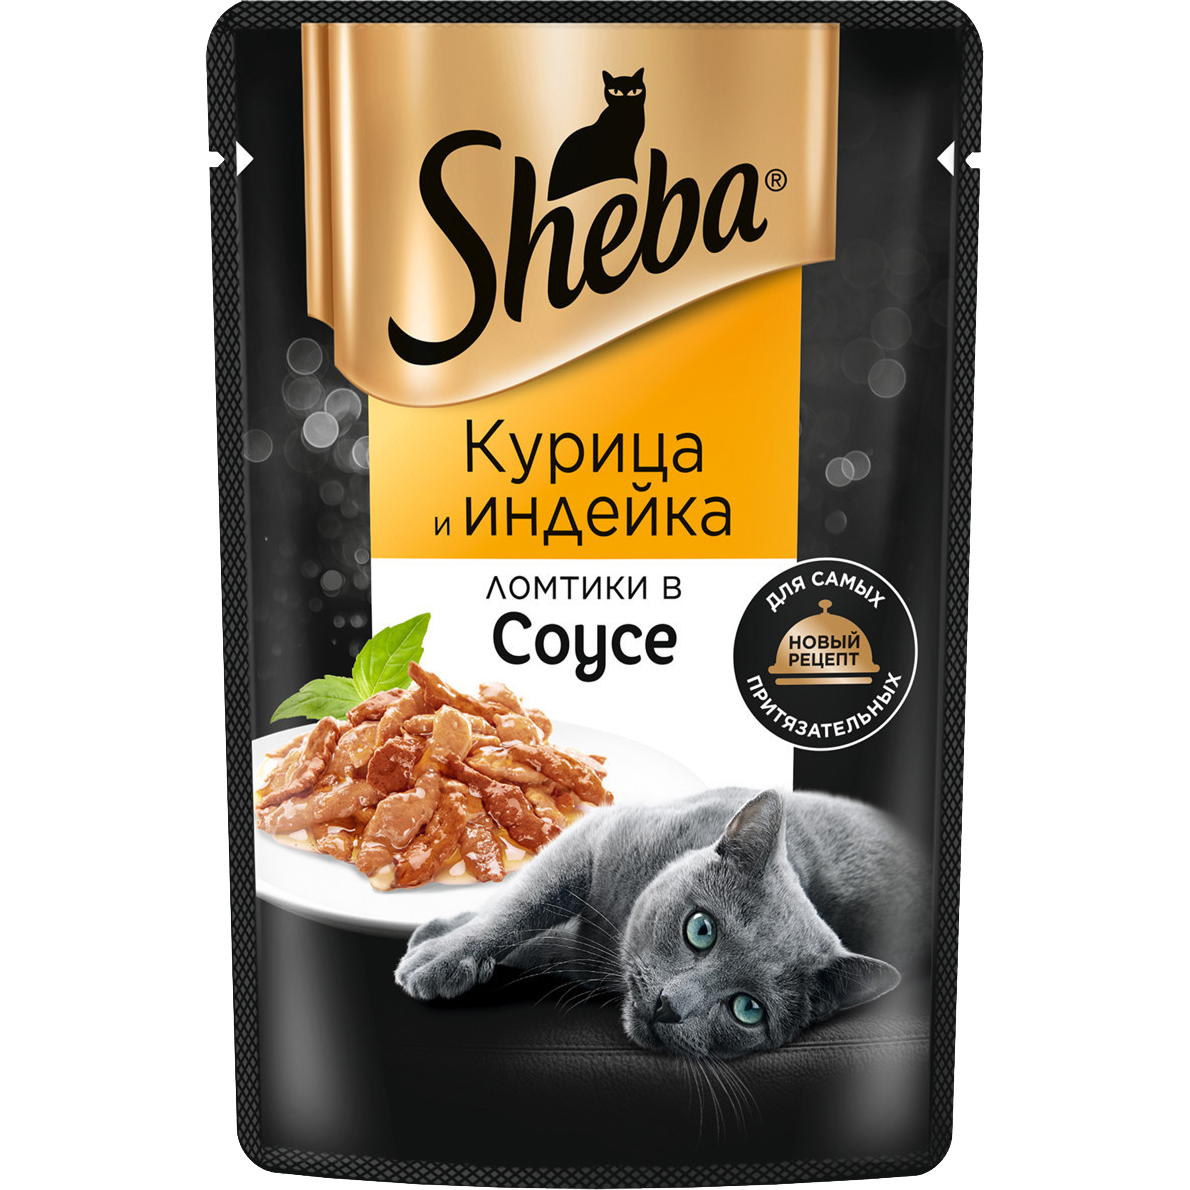 Корм для кошек Sheba Курица и индейка ломтики в соусе 75 г корм для кошек sheba форель и креветки ломтики в соусе 75 г